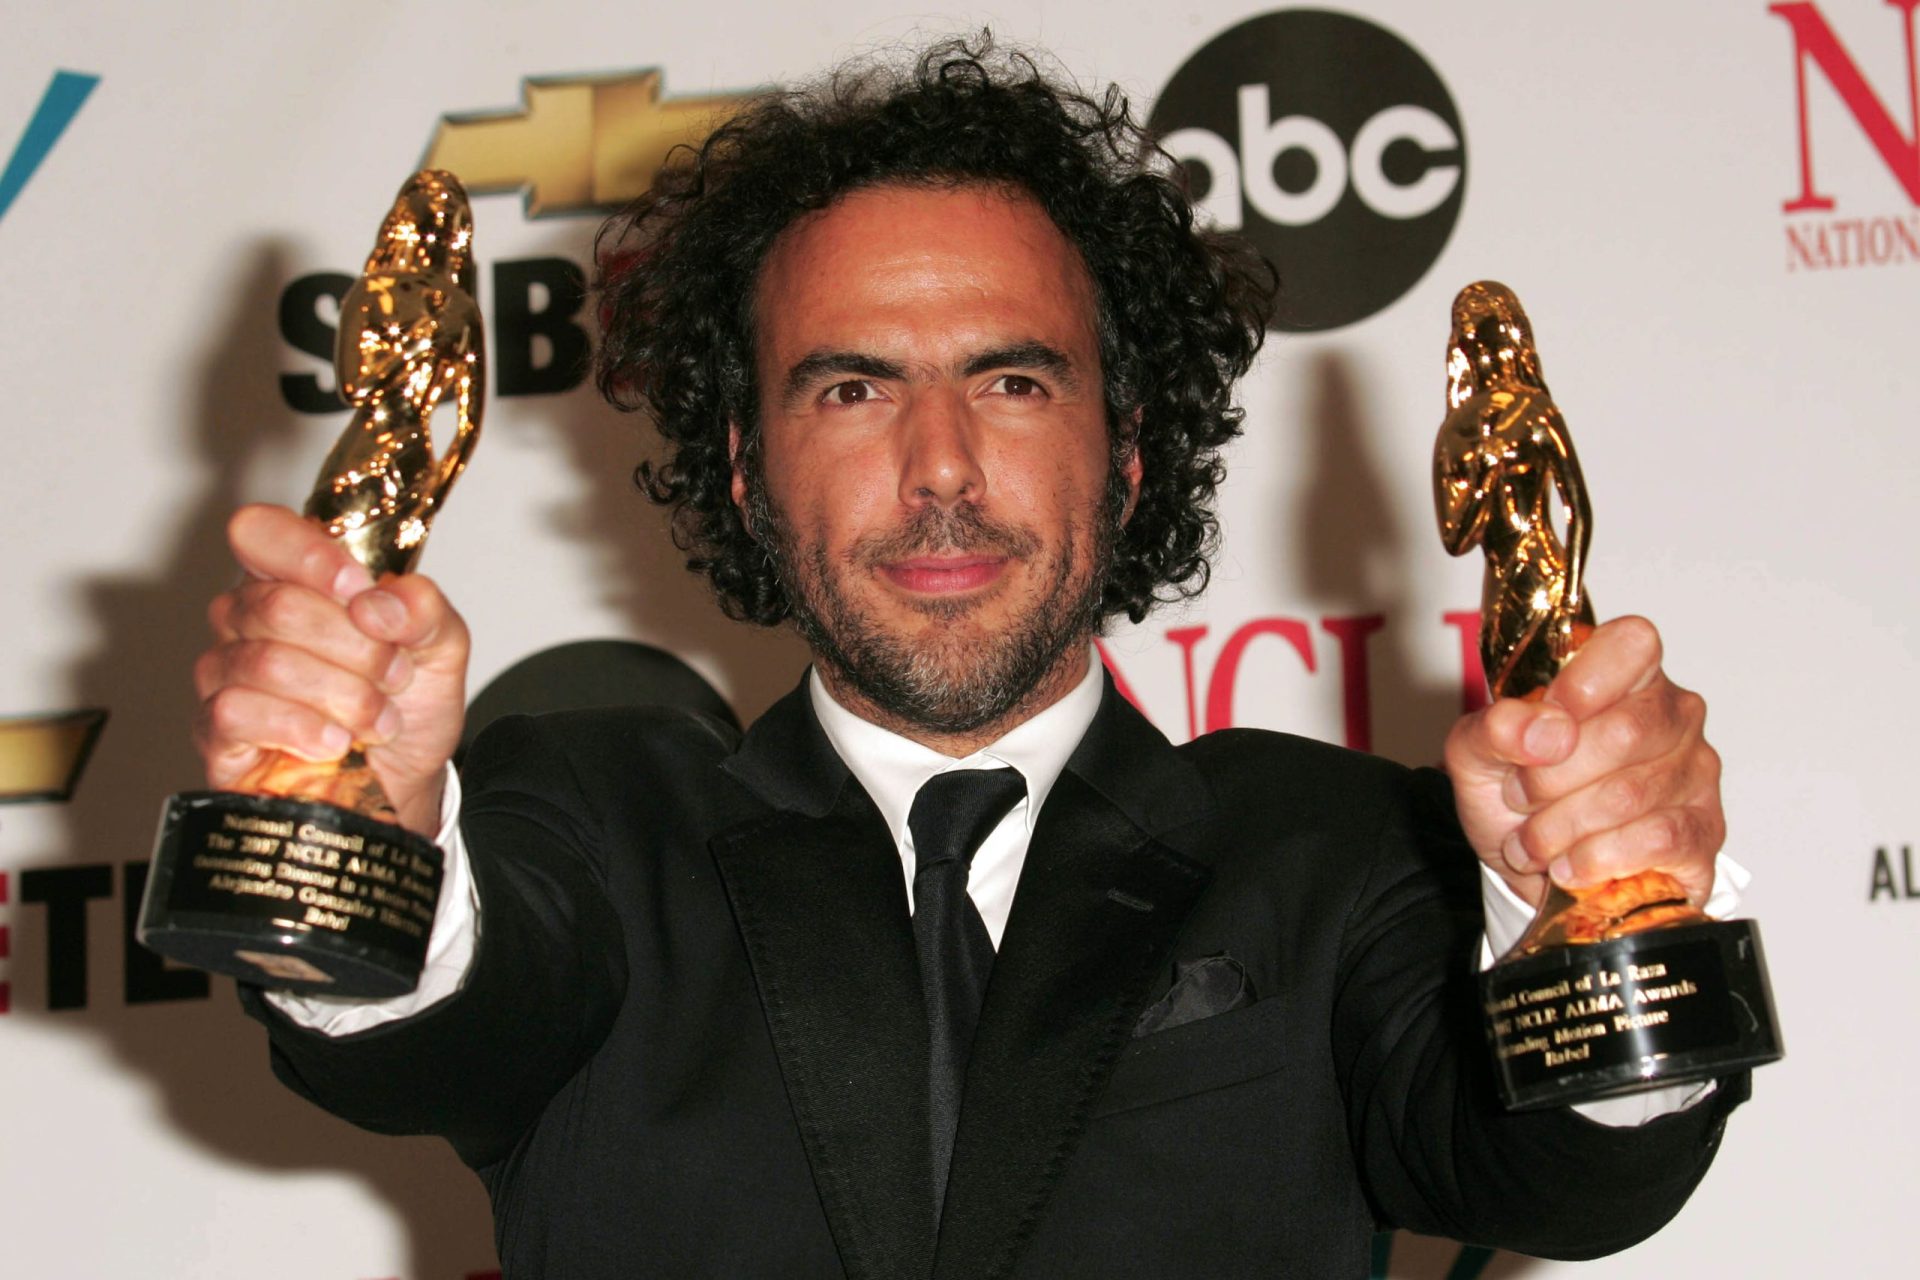 Óscares 2015. Alejandro G. Iñarritu: O mexicano que se impôs em Hollywood